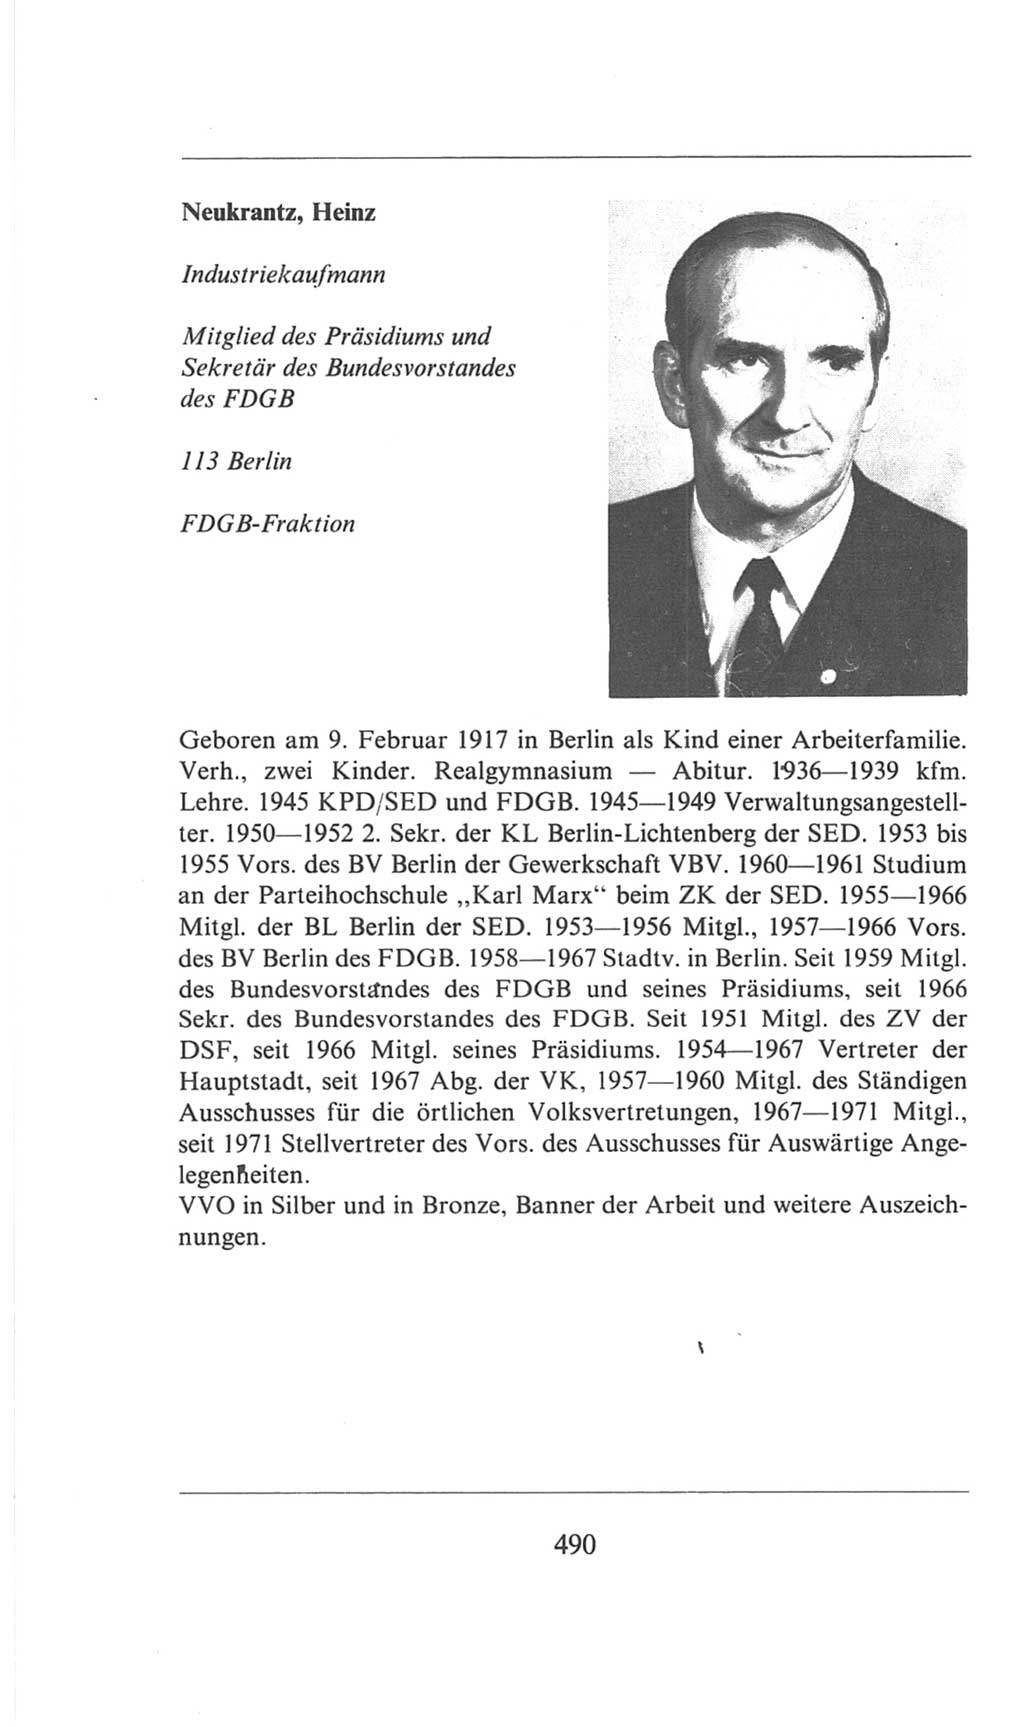 Volkskammer (VK) der Deutschen Demokratischen Republik (DDR), 6. Wahlperiode 1971-1976, Seite 490 (VK. DDR 6. WP. 1971-1976, S. 490)